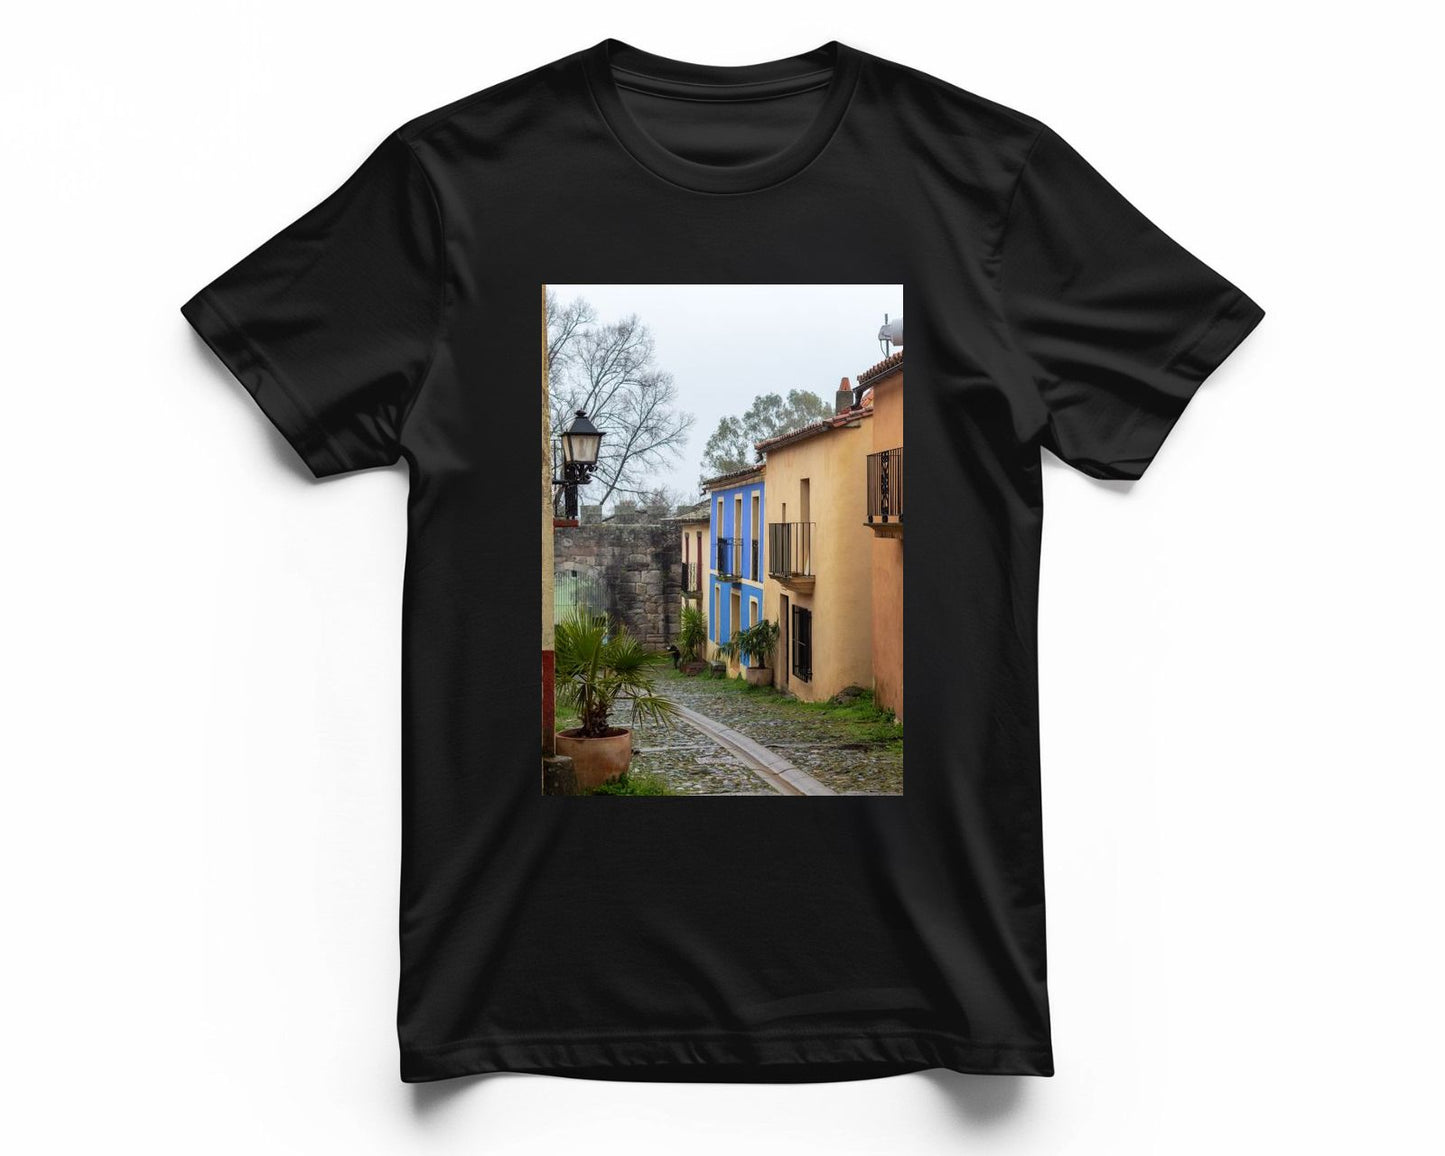 La casa de fachada azul de Granadilla - @filmload